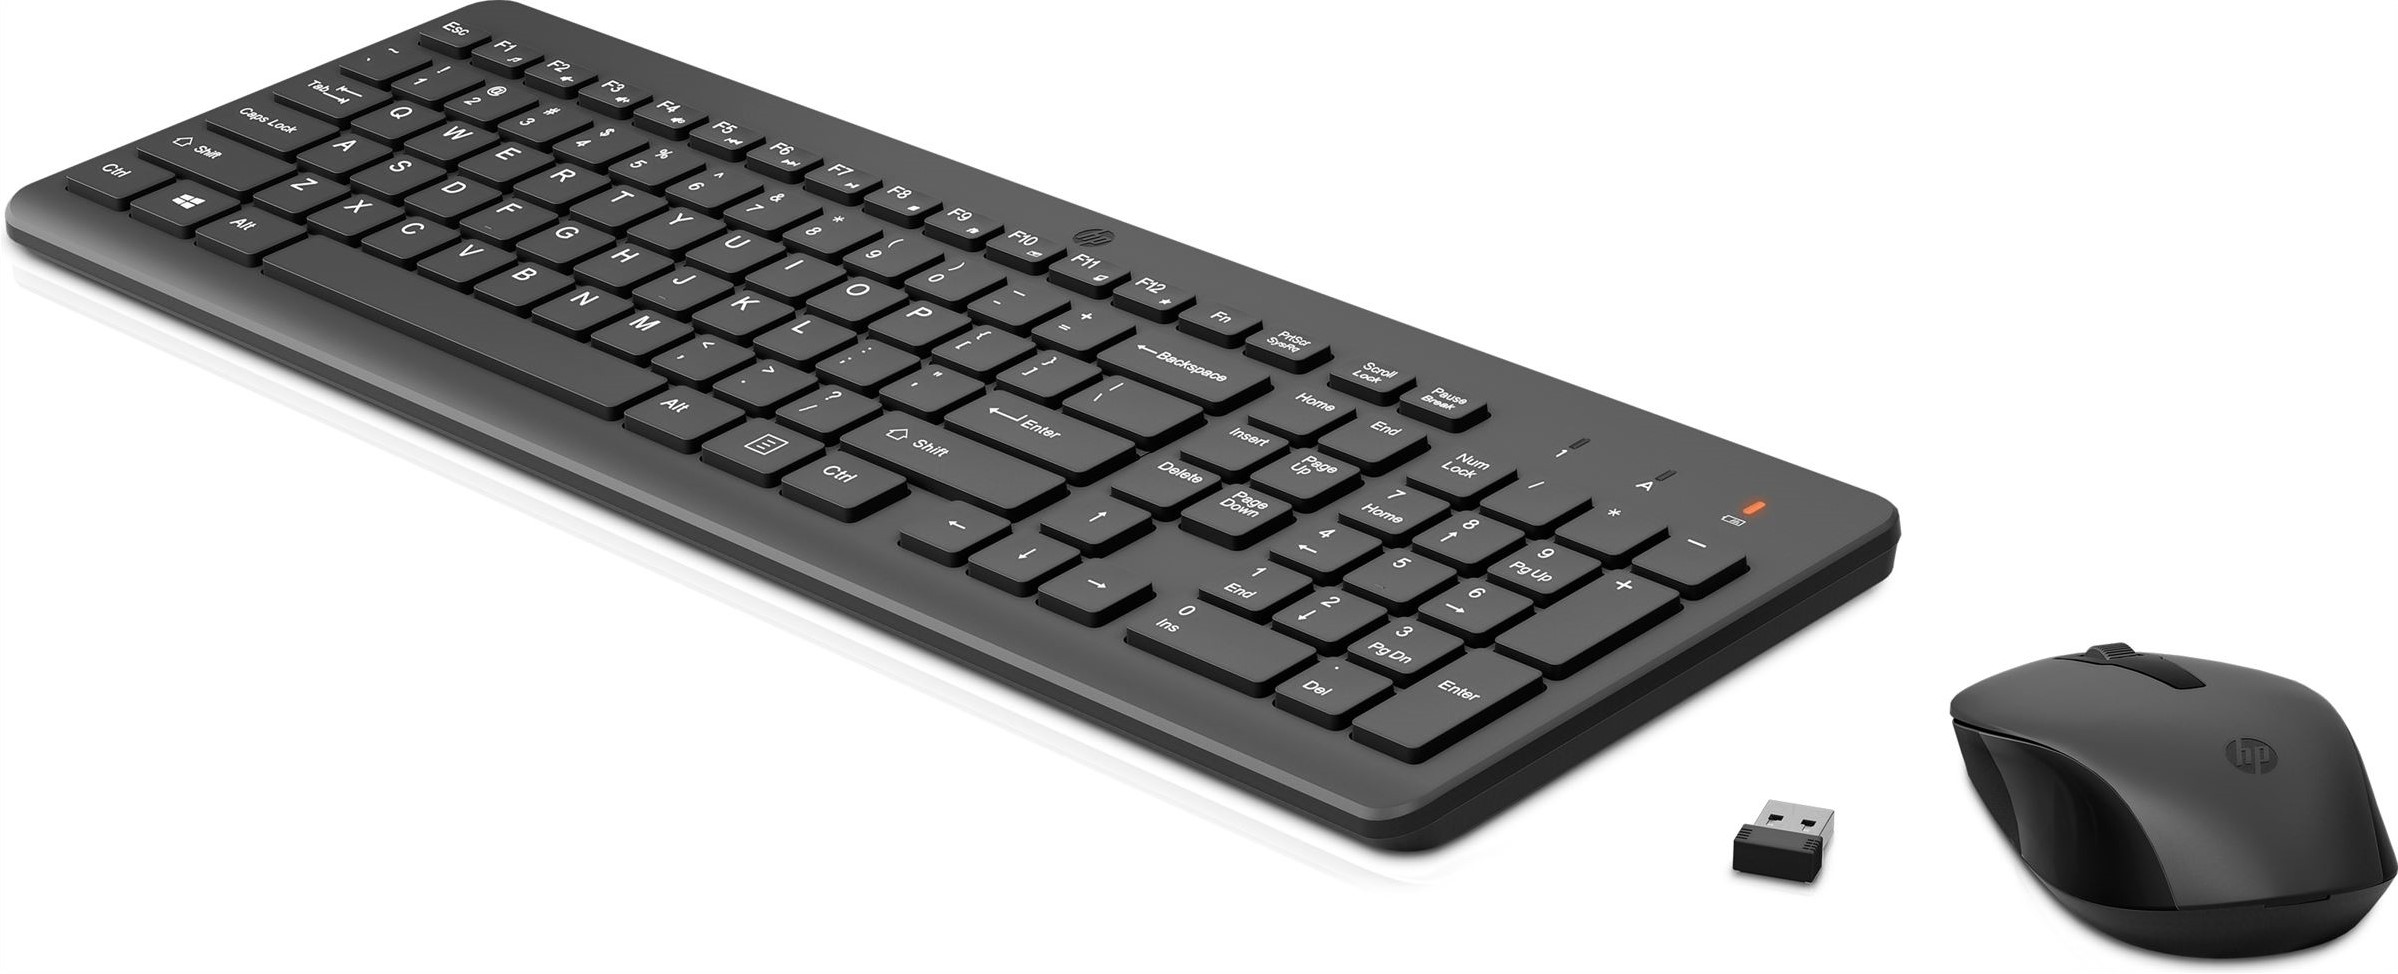 HP draadloze muis en draadloos toetsenbord bij